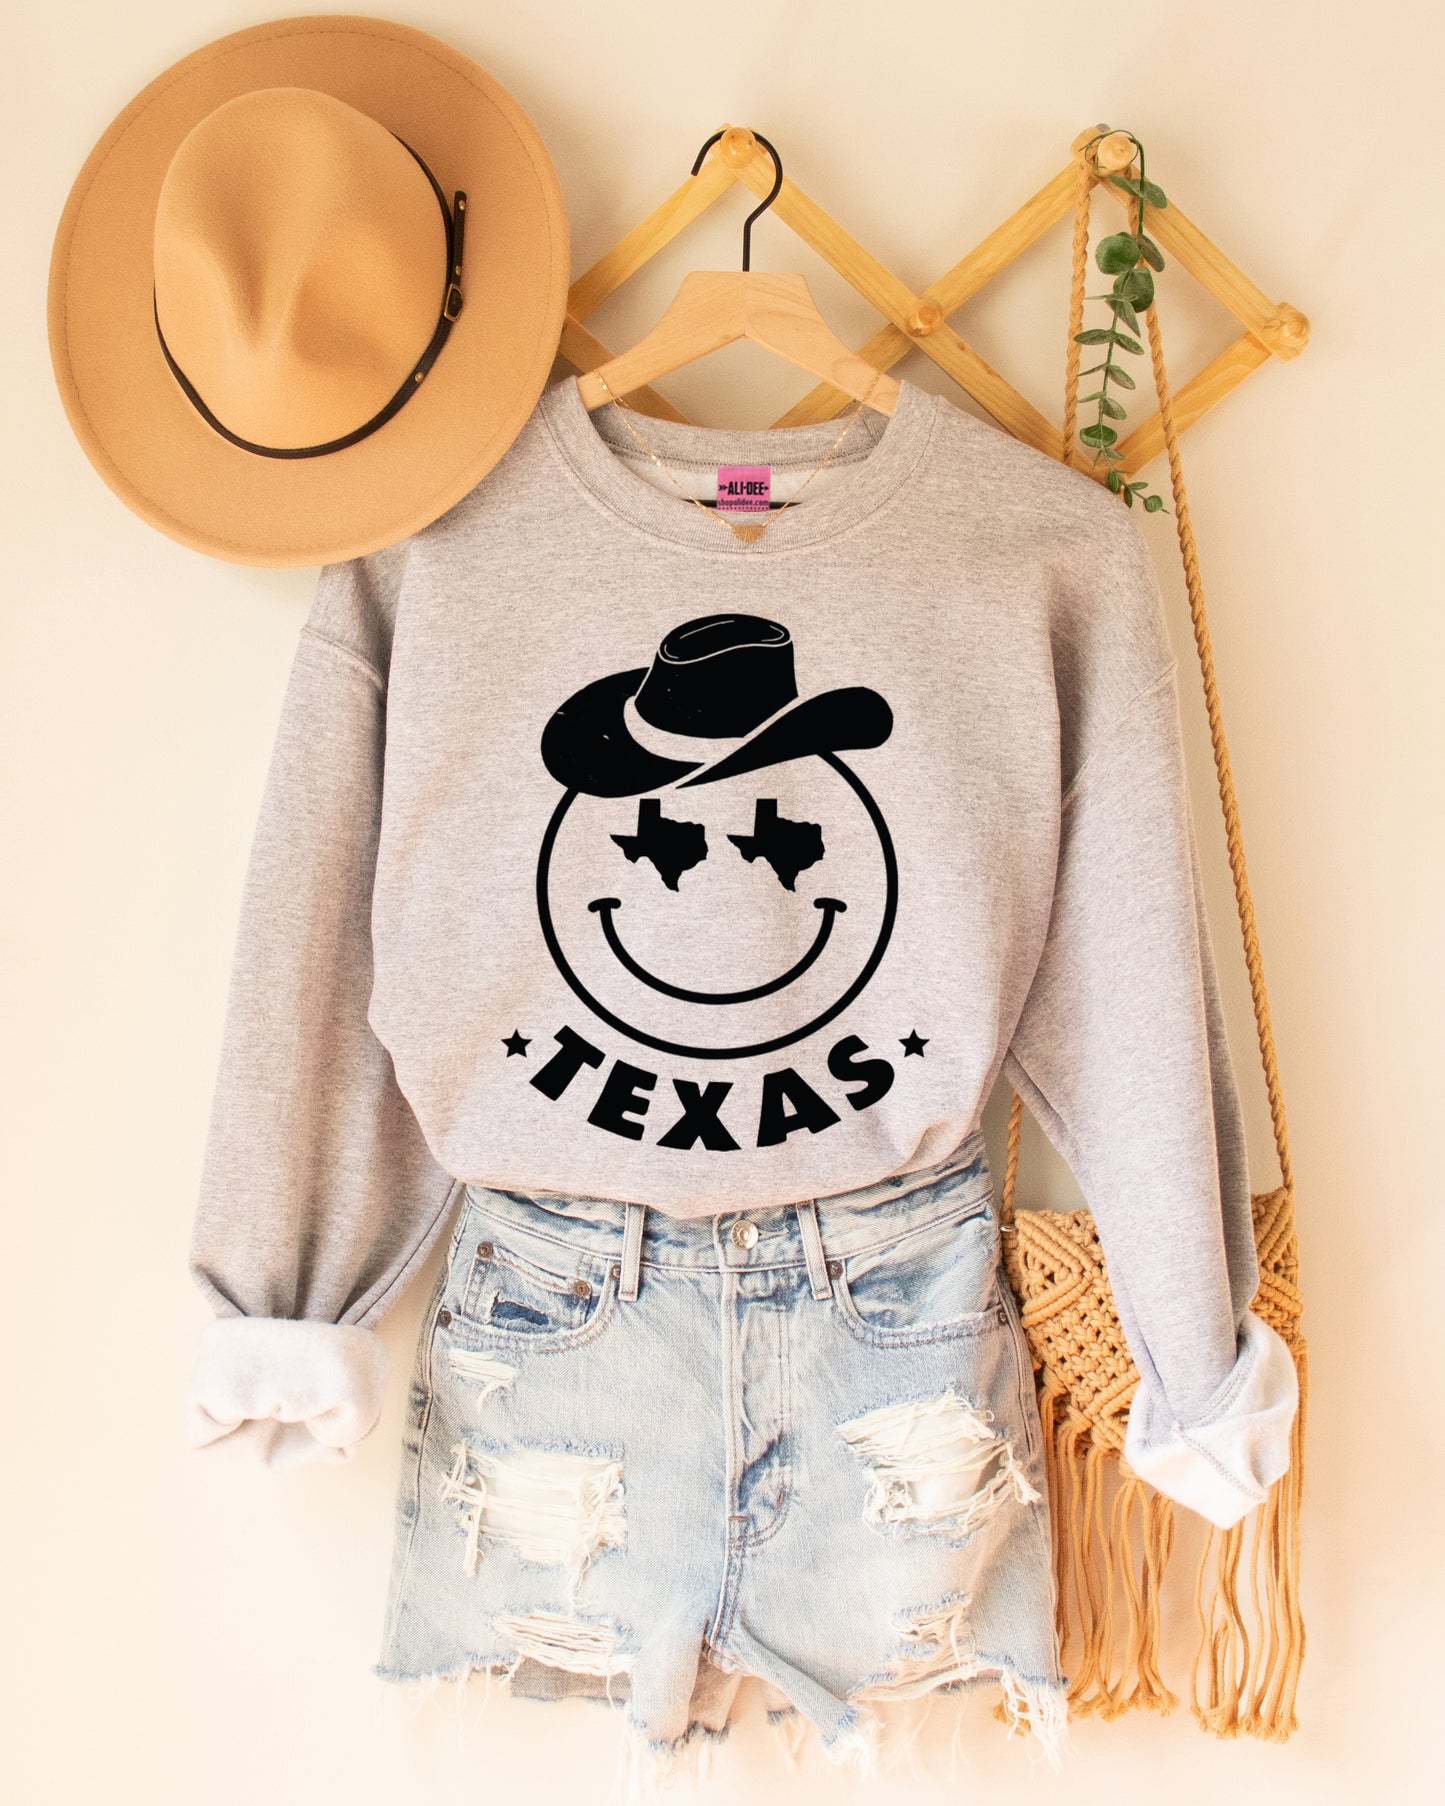 Texas Smiley Sweatshirt - Heather Grey